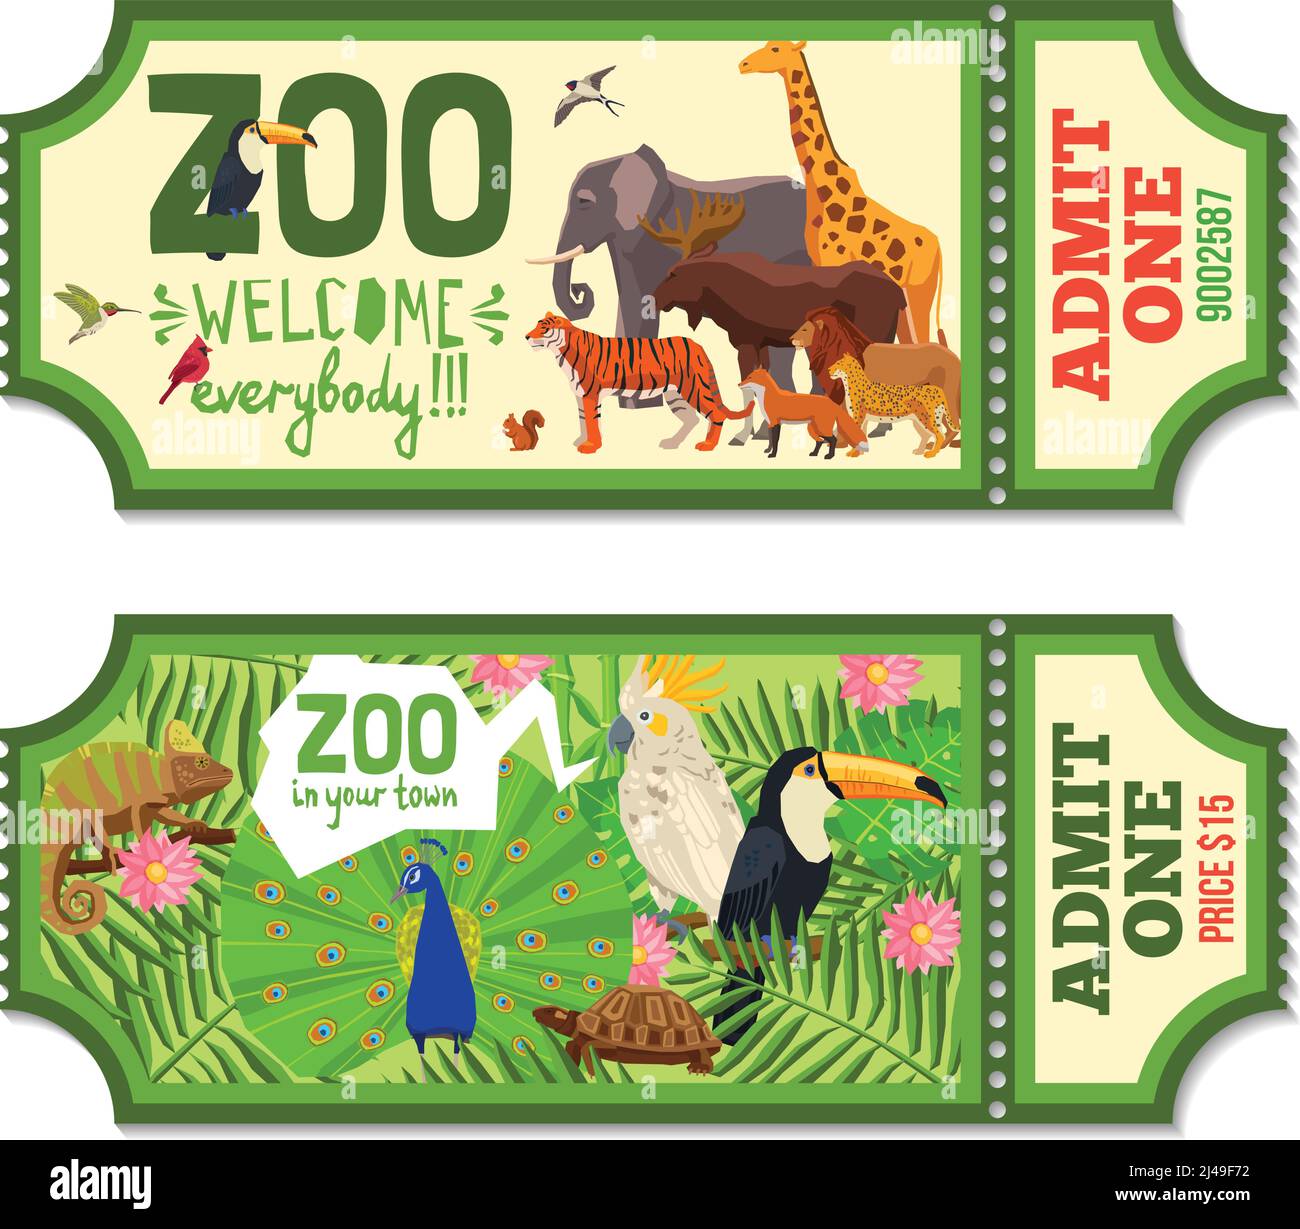 Biglietti colorati per lo zoo con piante tropicali, uccelli esotici e africani illustrazione vettoriale piatta degli animali Illustrazione Vettoriale